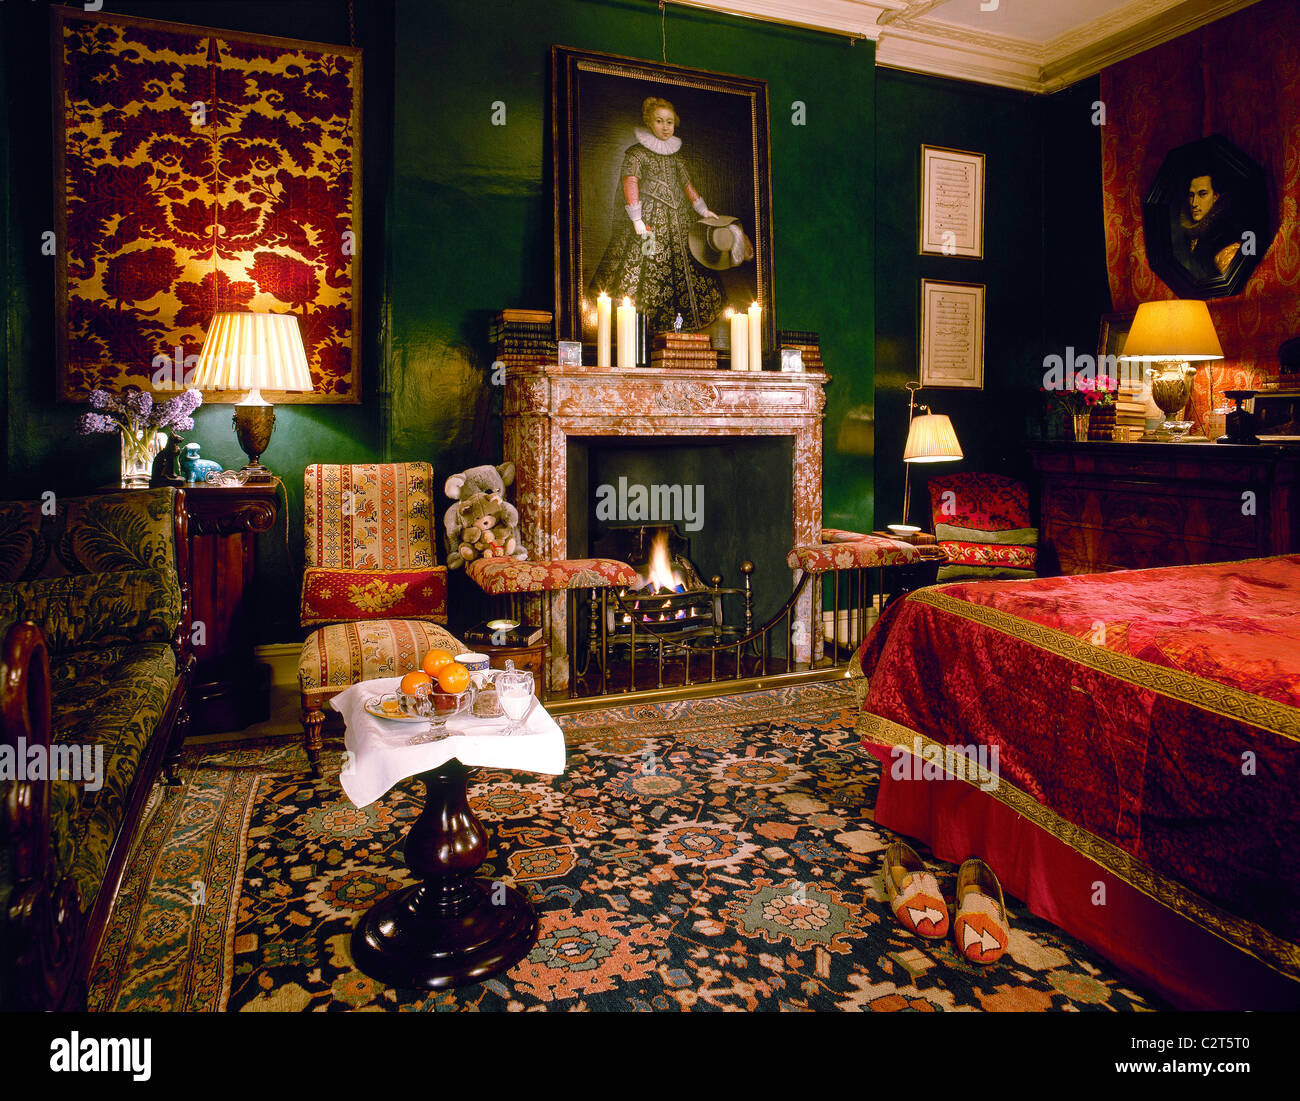 Tradicional, habitación roja, chimenea de mármol, chimeneas abiertas, tapices para colgar en pared Foto de stock